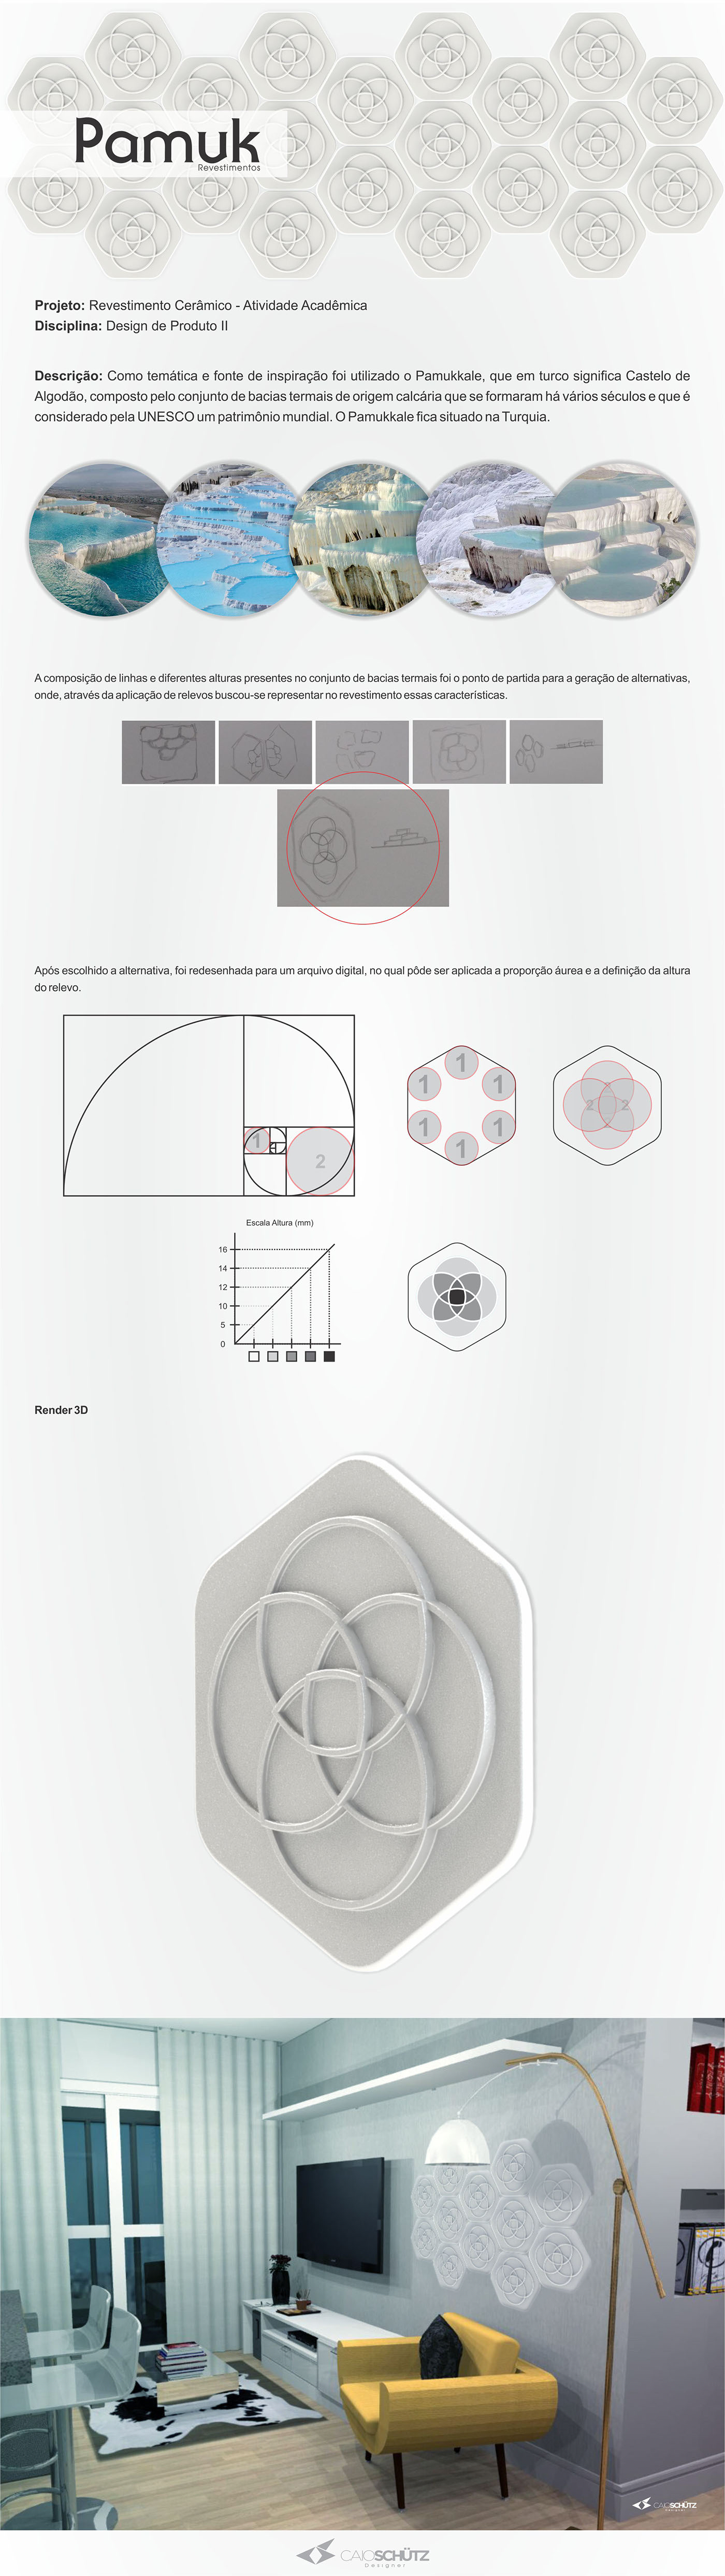 revestimento ceramica design Interior pamukkale turquia